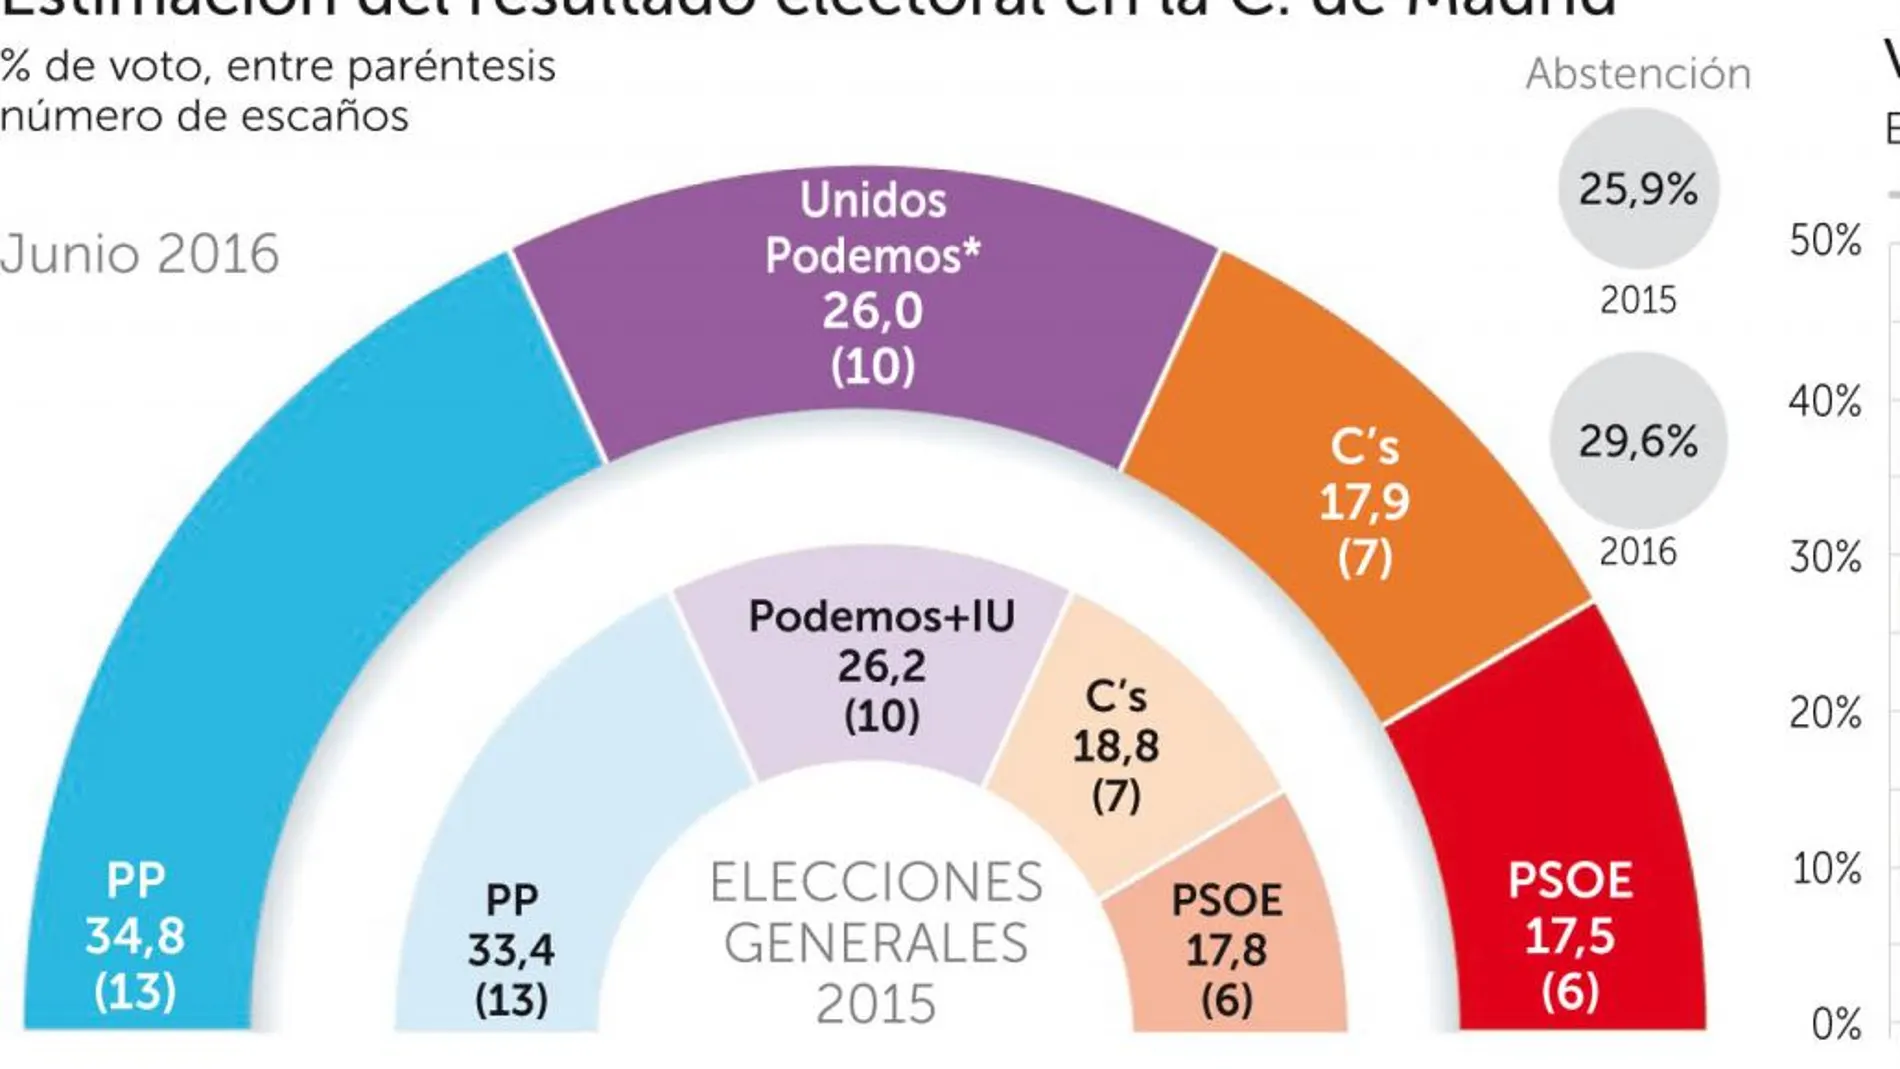 El PSOE repite su peor resultado y queda relegado a cuarta fuerza